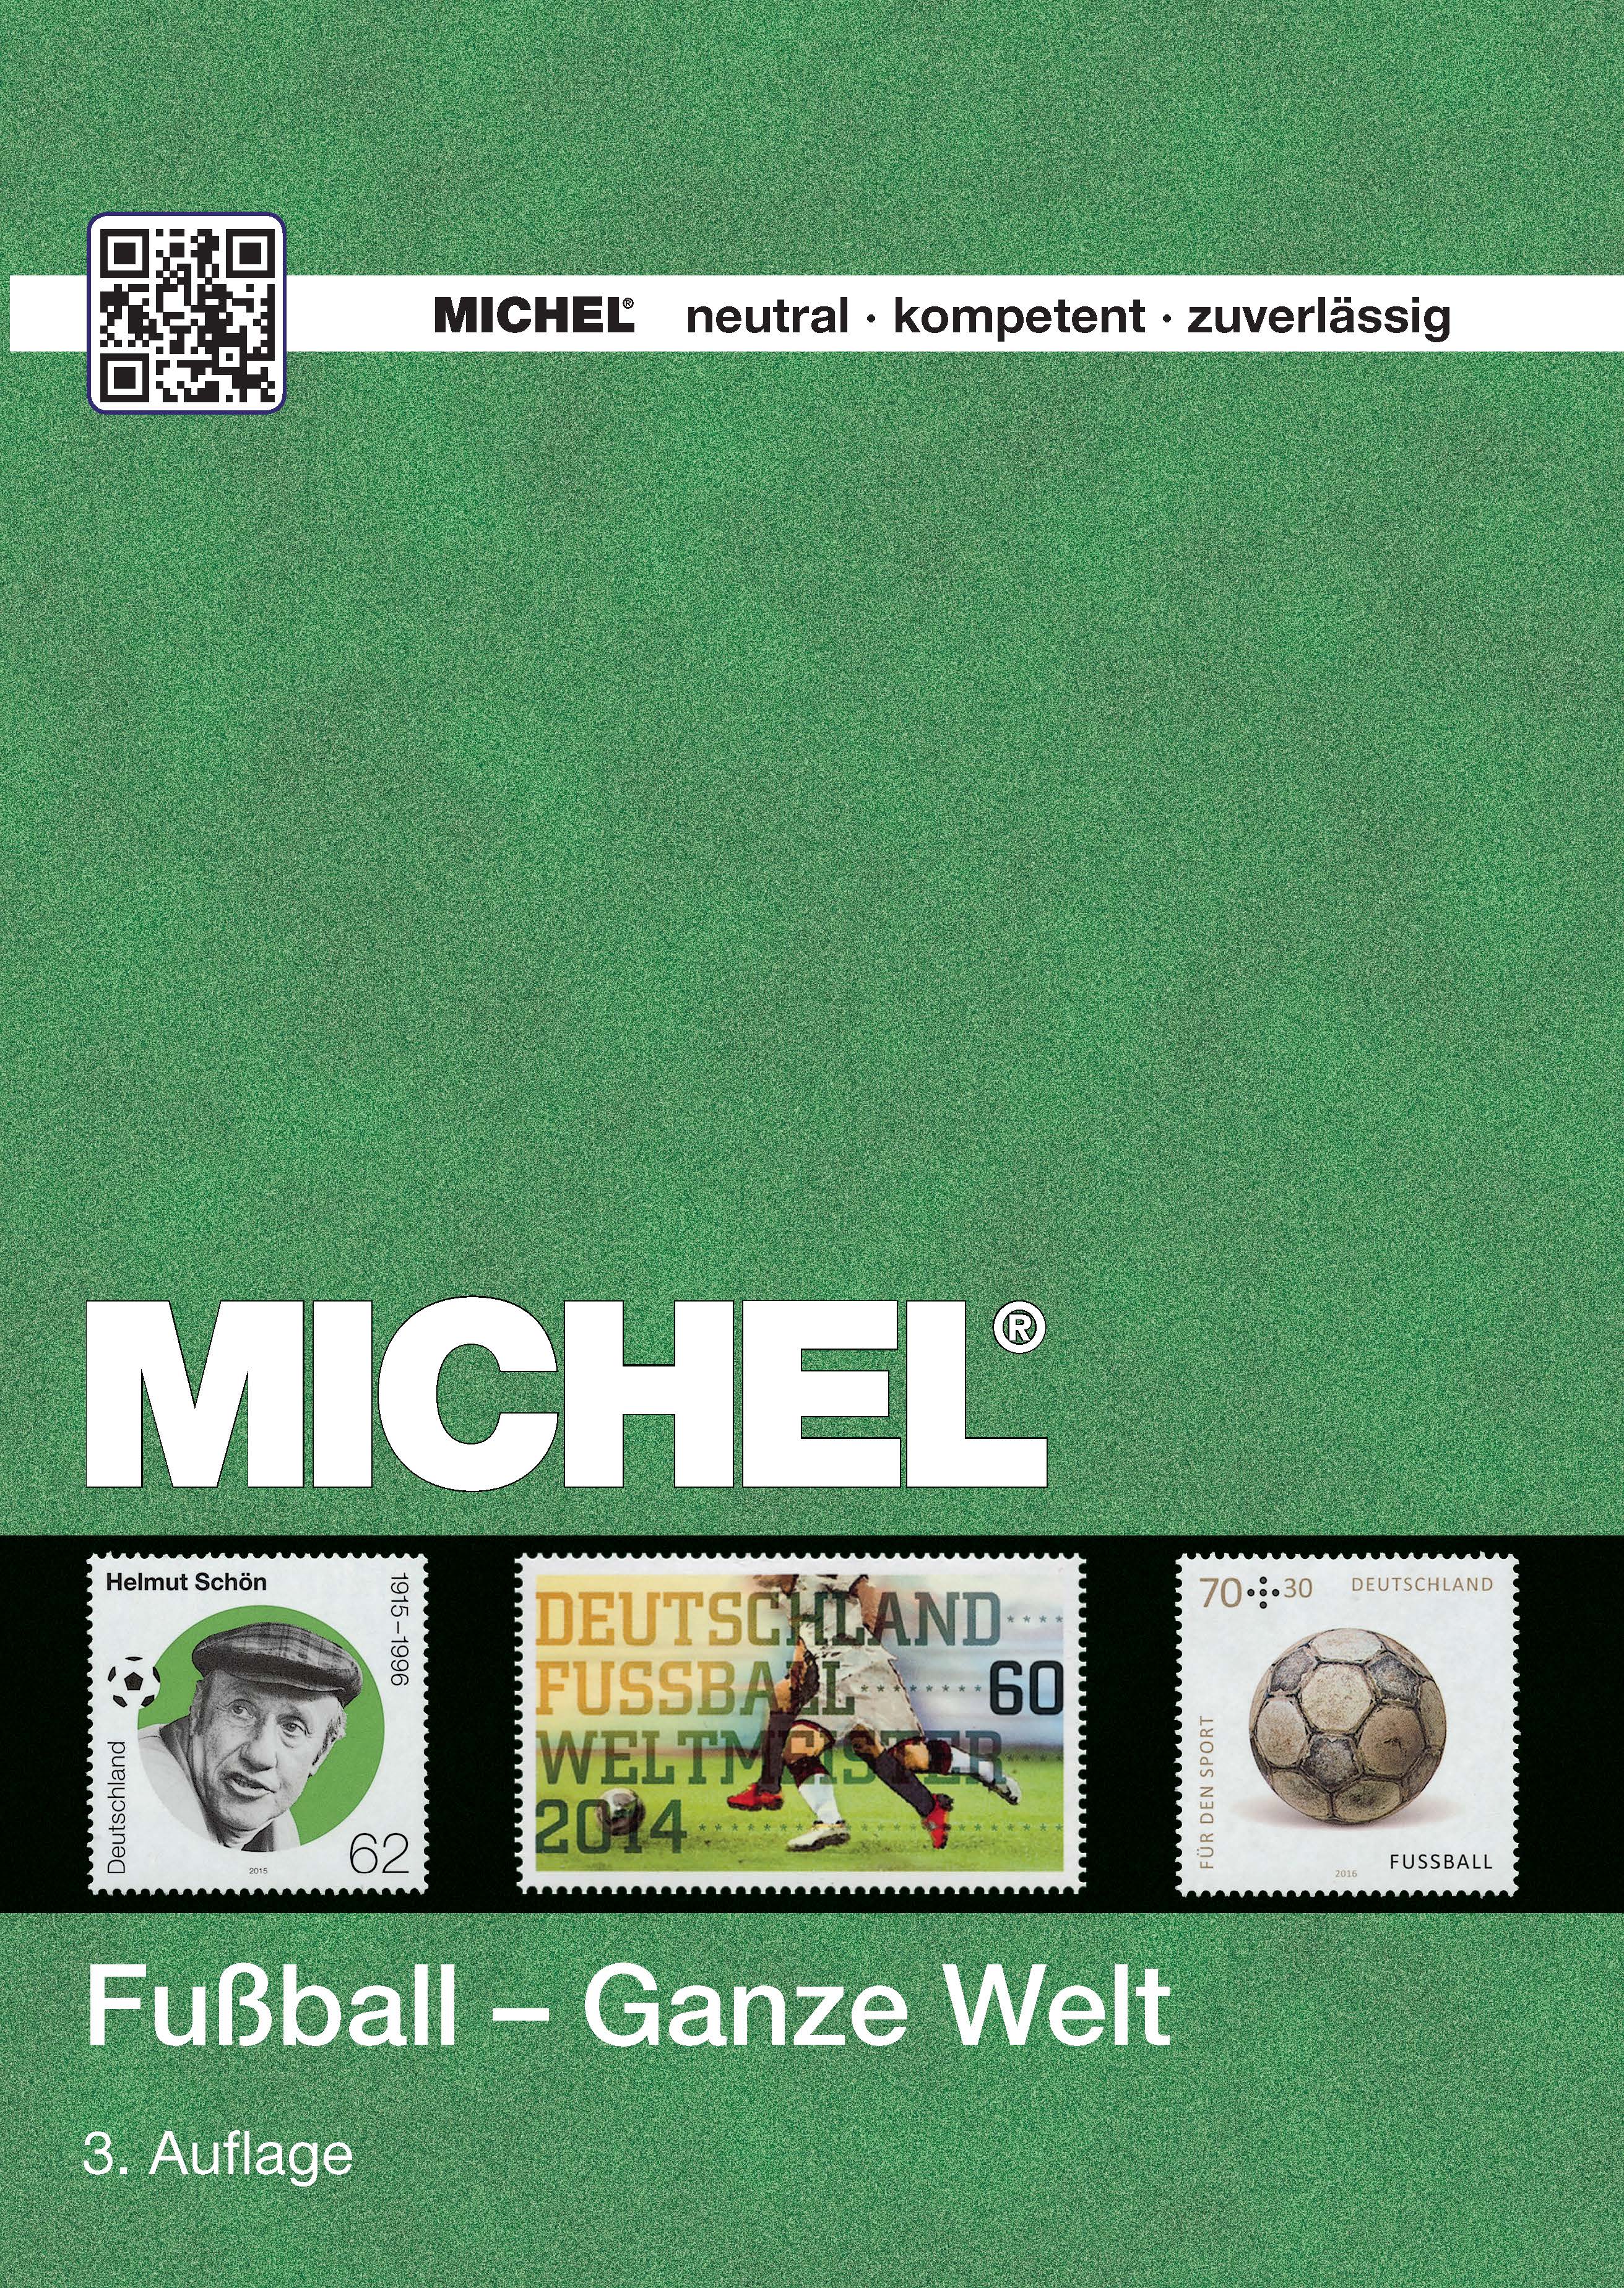  Fotbal / Fussball – celý svět 2016  MICHEL katalog známek